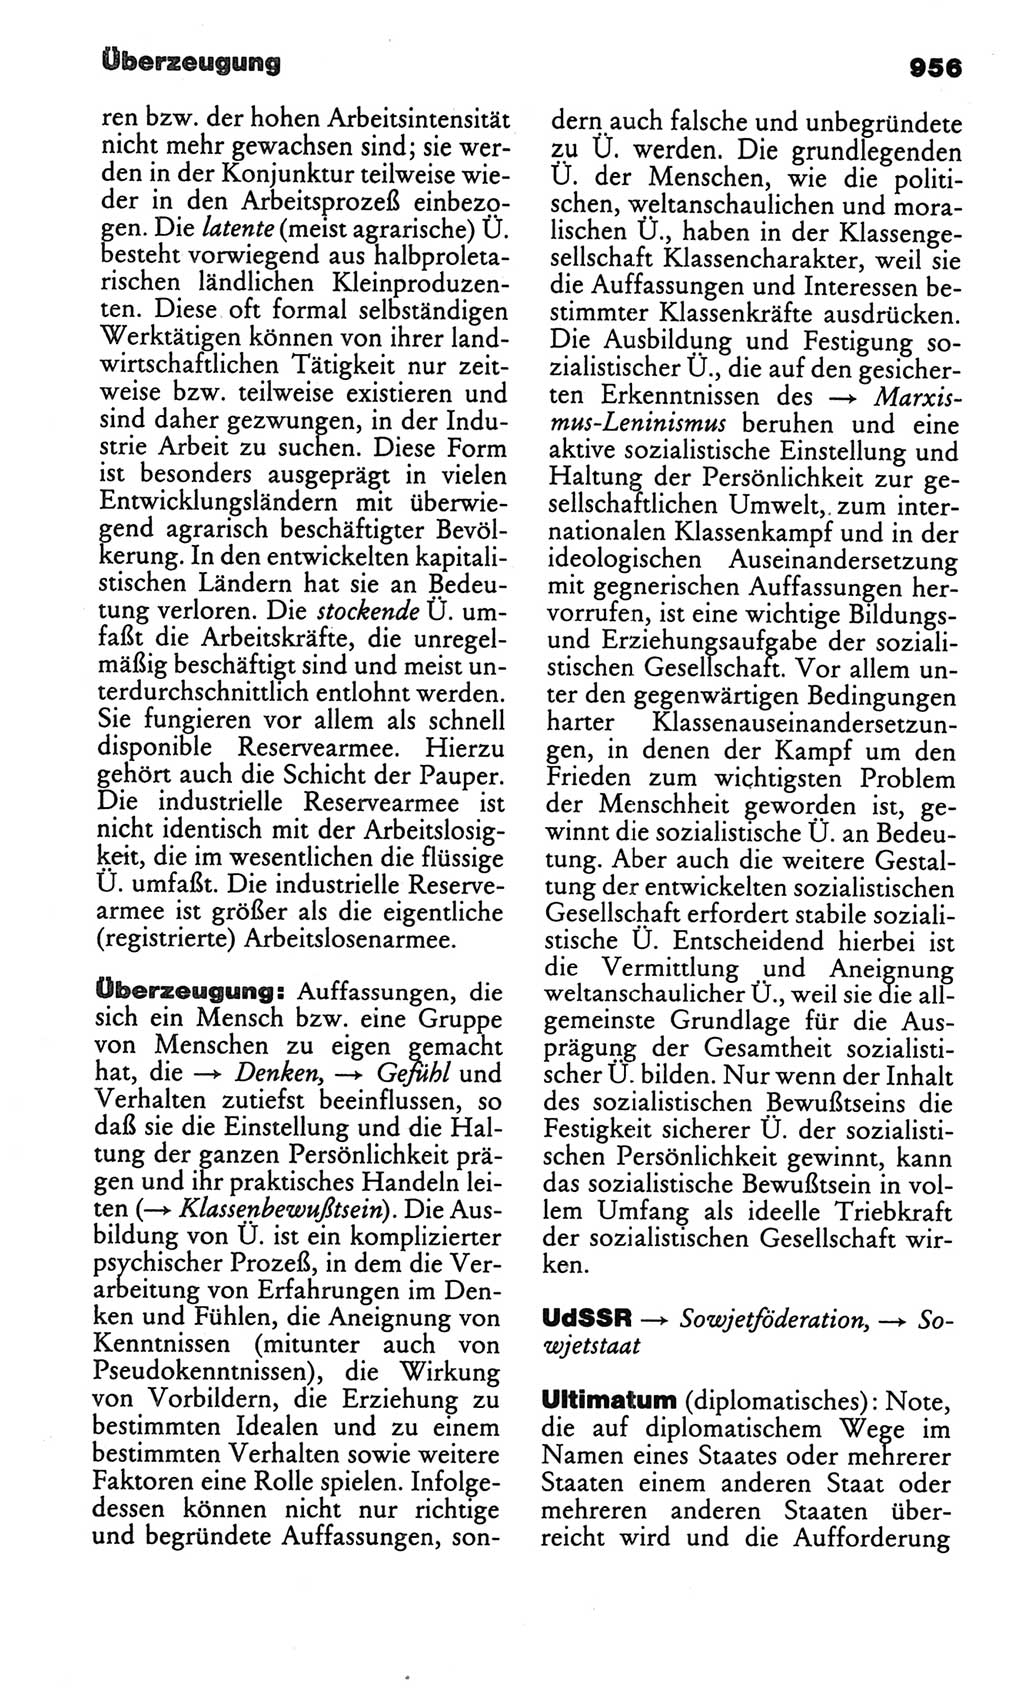 Kleines politisches Wörterbuch [Deutsche Demokratische Republik (DDR)] 1986, Seite 956 (Kl. pol. Wb. DDR 1986, S. 956)